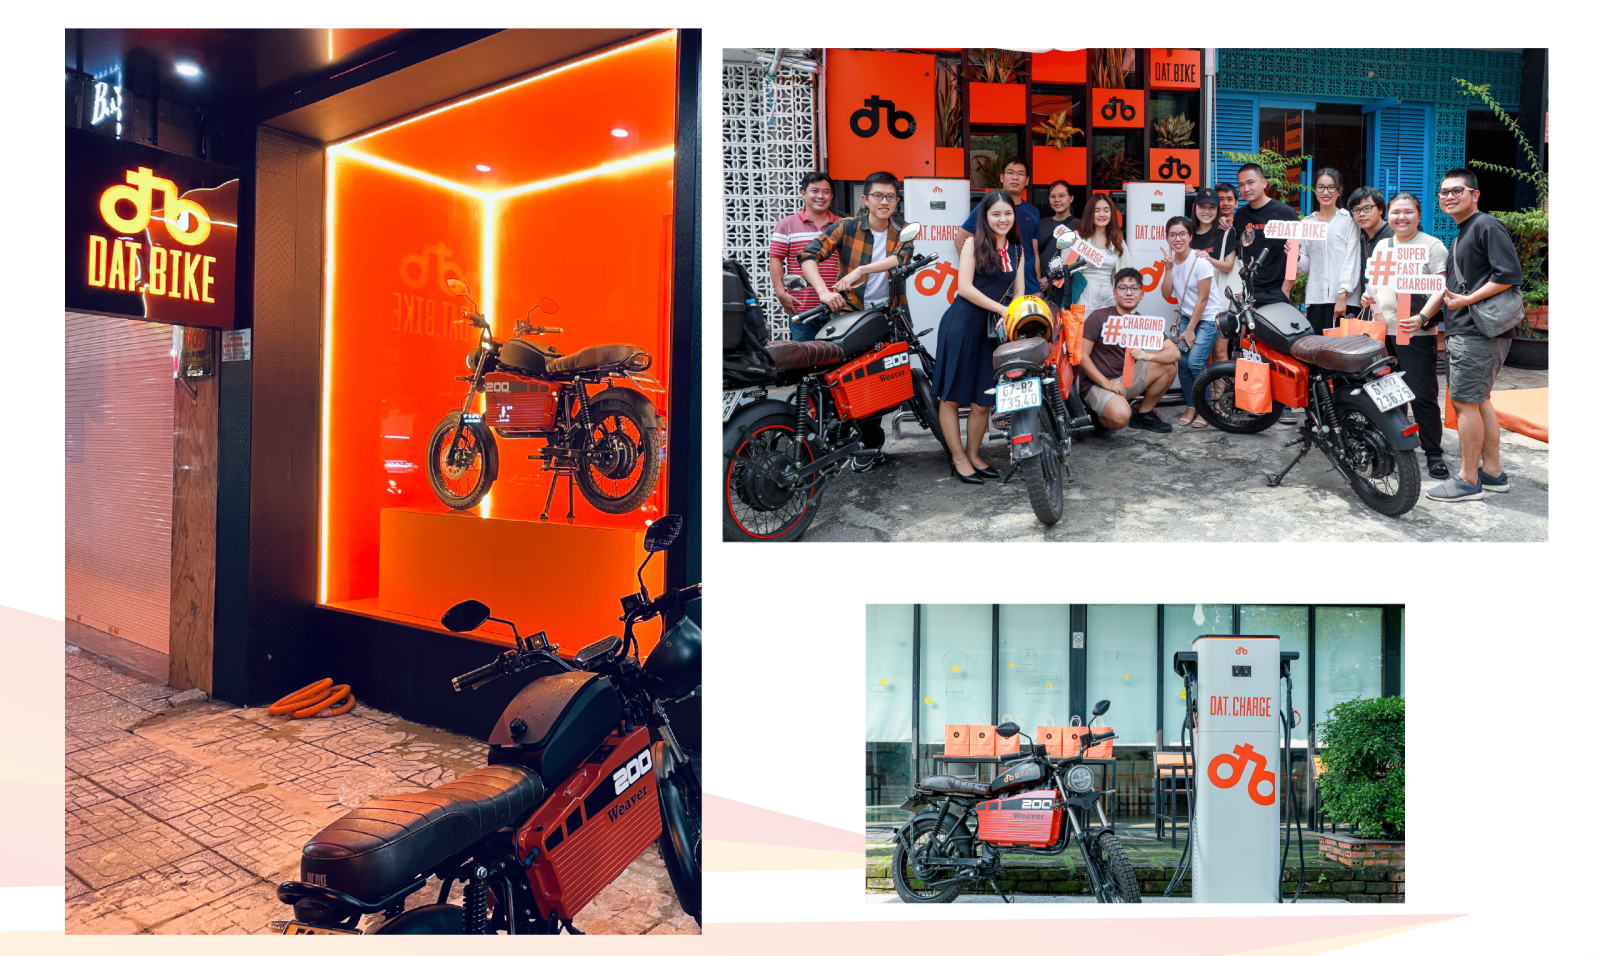 Hiện Dat Bike đã có hệ thống show room tại ba miền Bắc - Trung - Nam